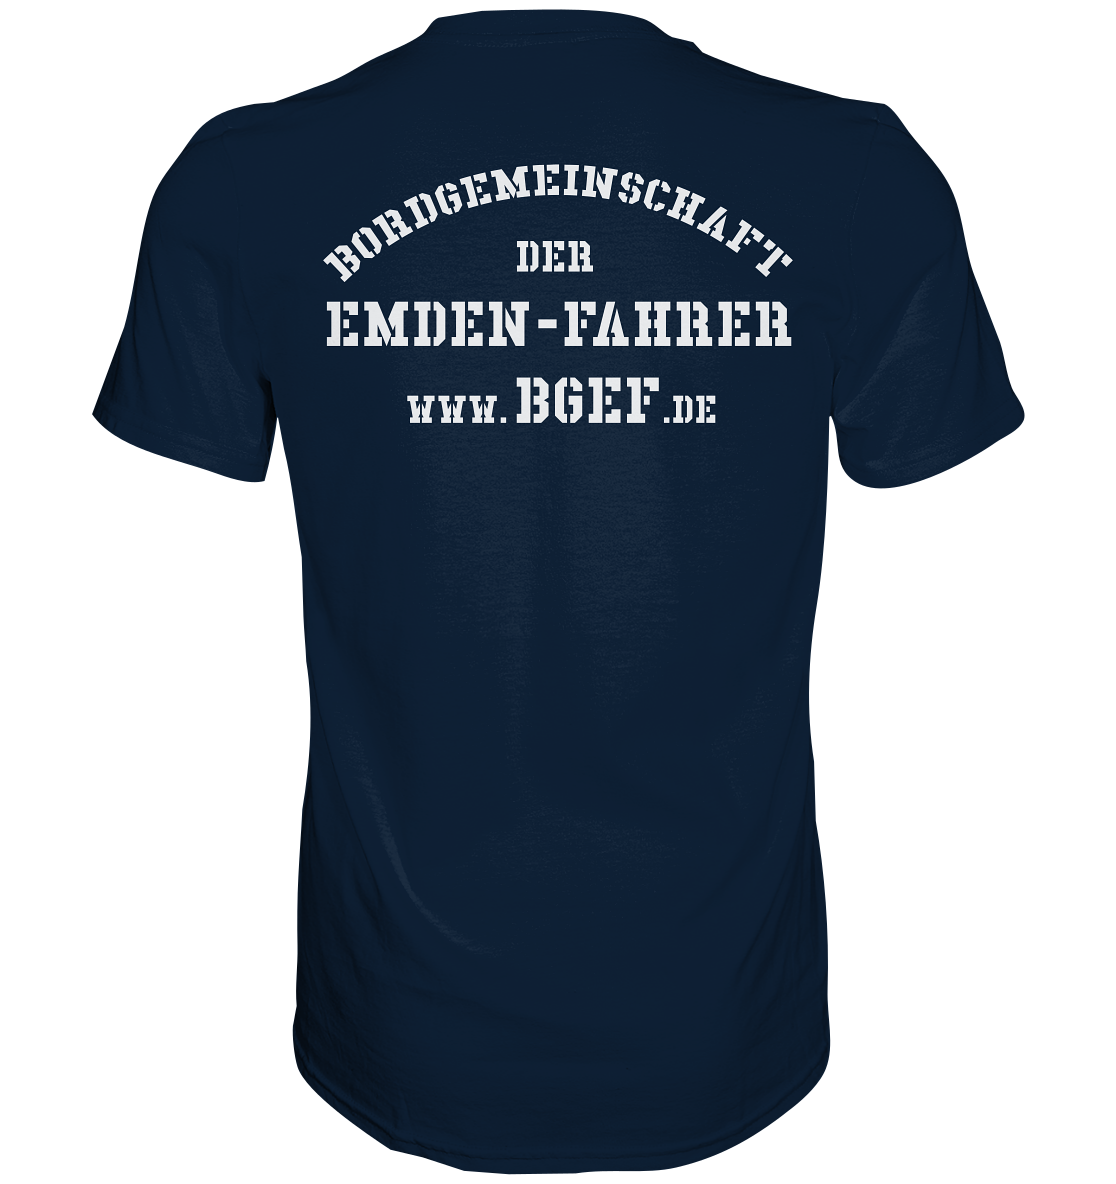 Bordgemeinschaft der Emdenfahrer F221 - Premium Shirt